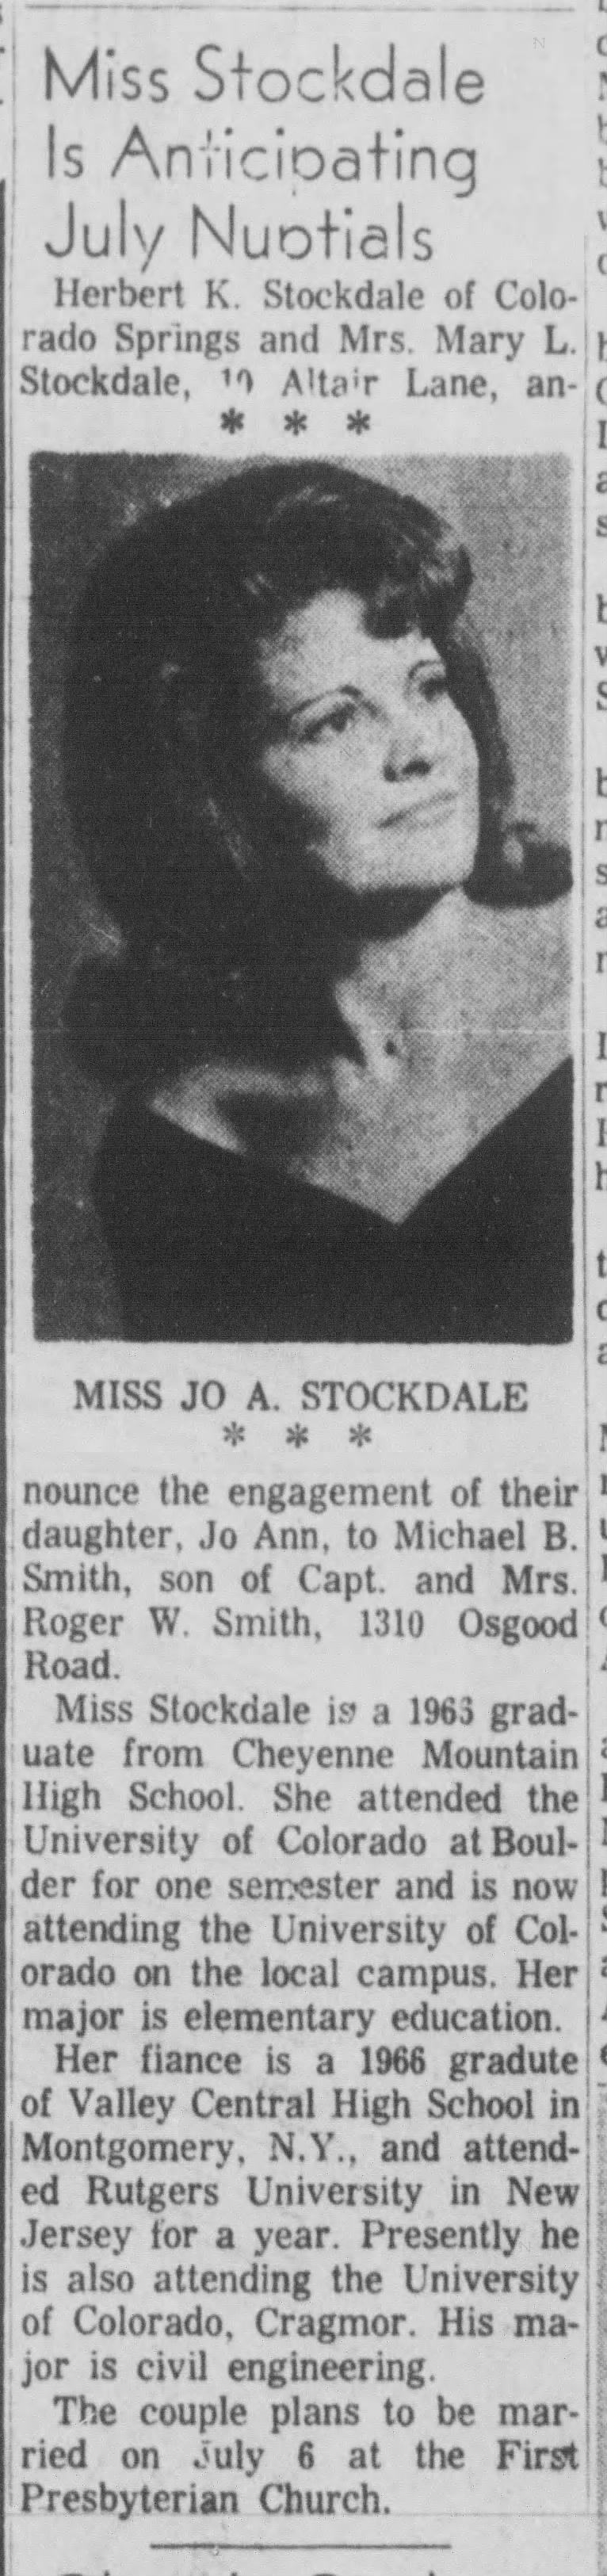 wedding announcement of Jo Ann Stockdale